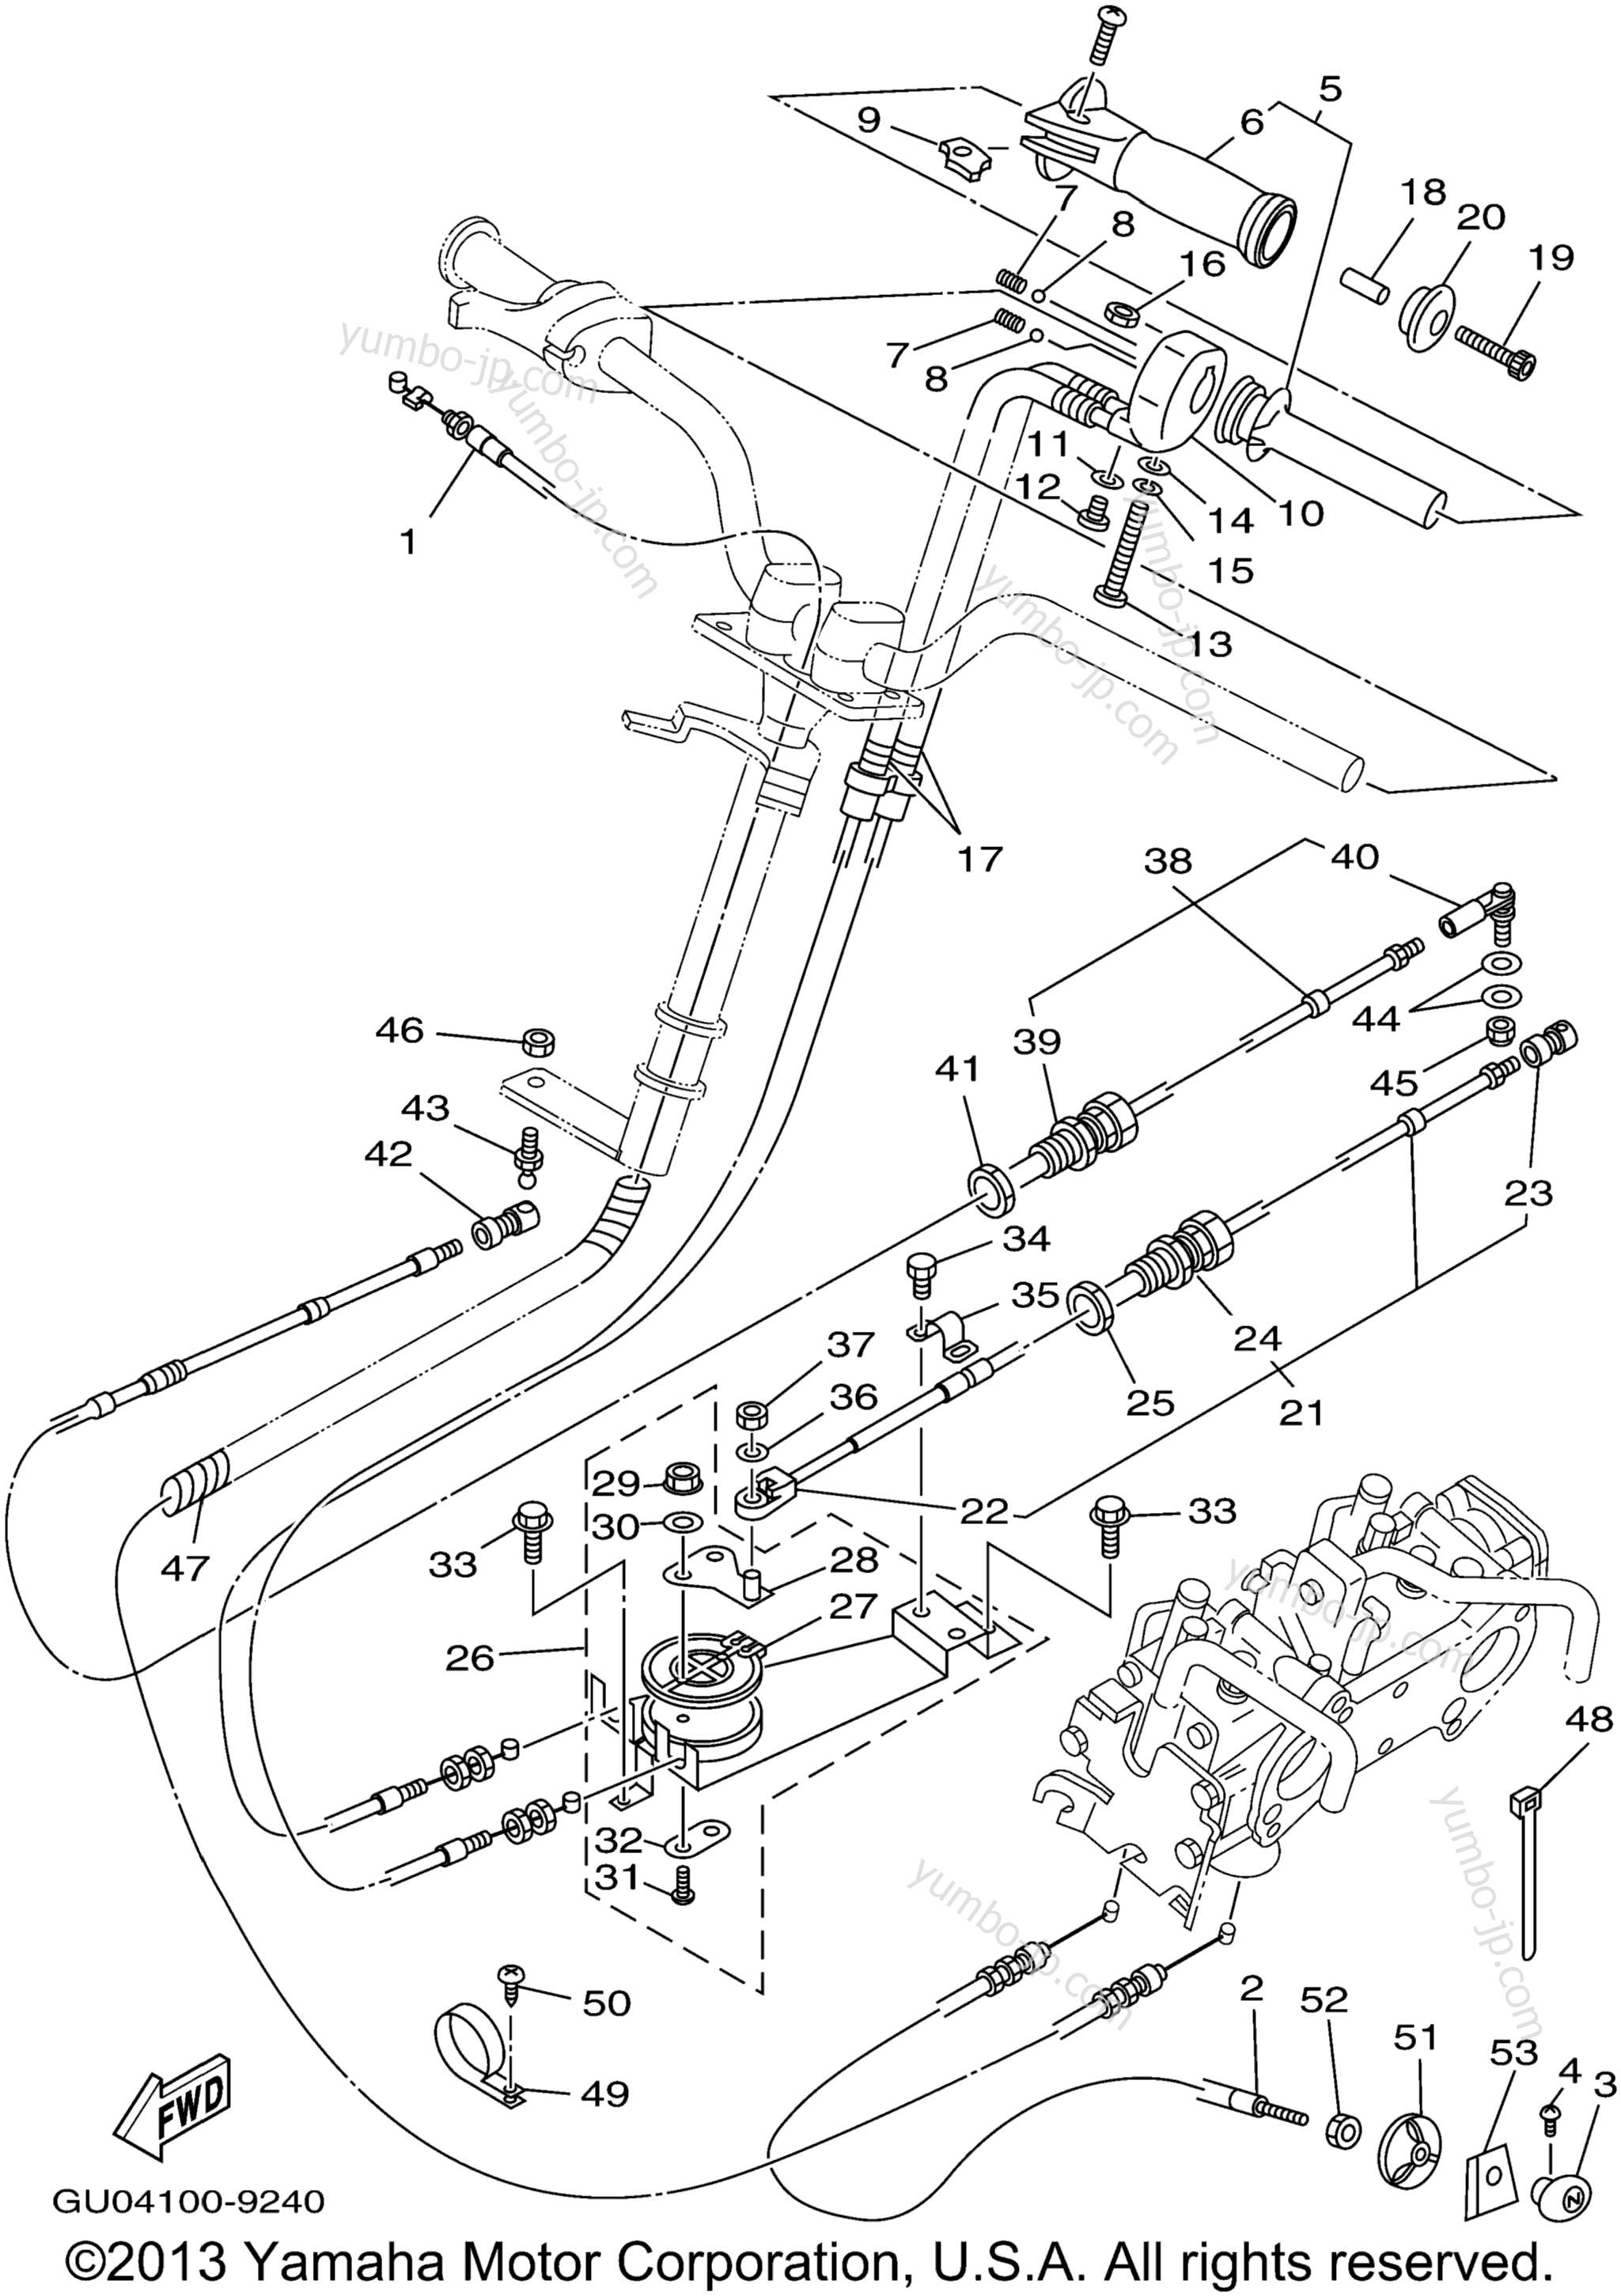 Устройство дистанционного управления / Кабеля для гидроциклов YAMAHA WAVE RUNNER GP800 (GP800X) 1999 г.